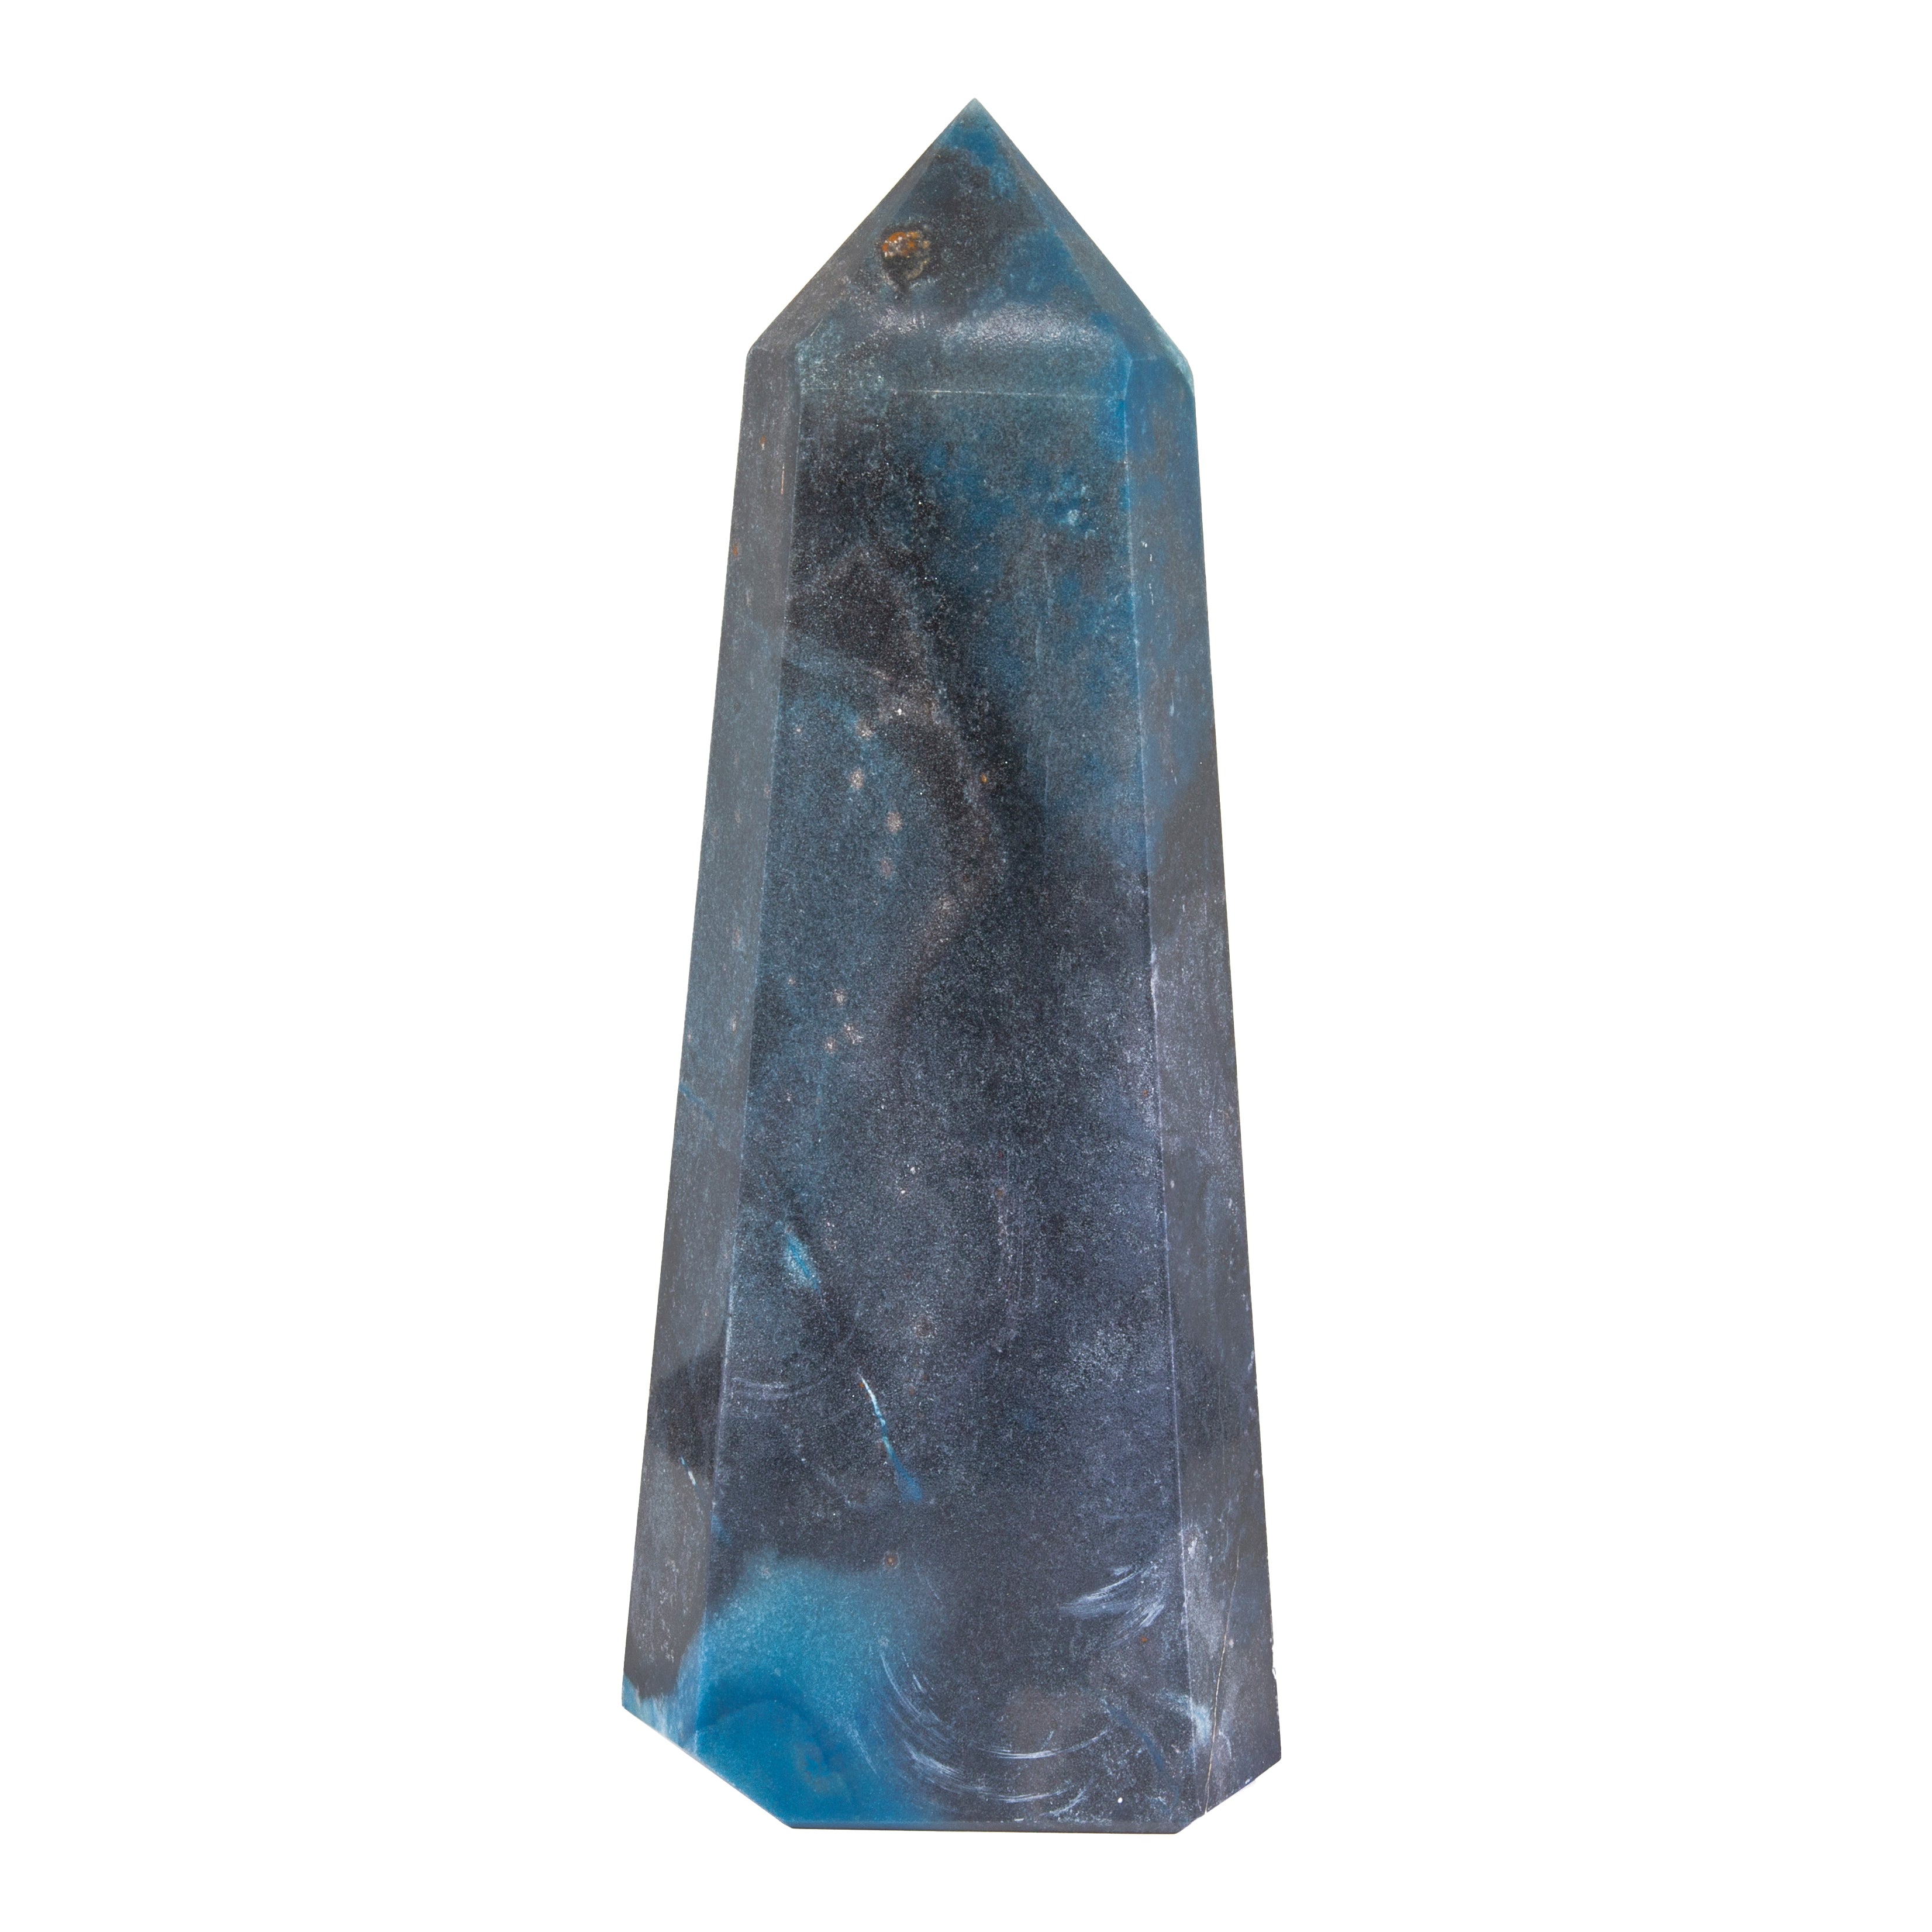 Trolleite in Quartzite 14 inch 11 lb Polished Crystal Tower - Brazil - JJH-054 - Crystalarium